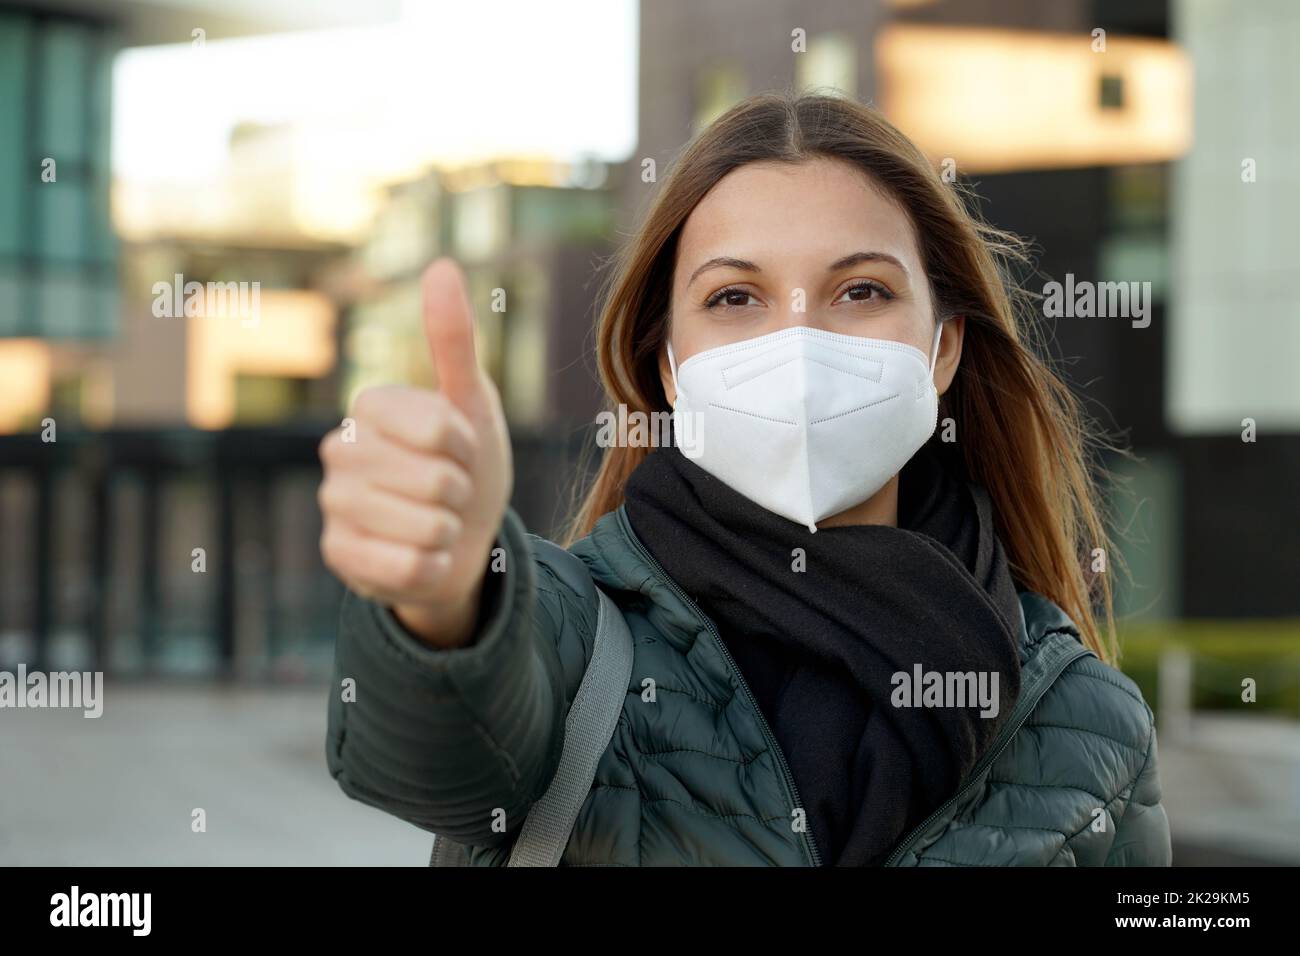 Giovane studentessa ottimista che dà i pollici in su il gesto. Indossa una maschera protettiva (DPI) per evitare l'inquinamento atmosferico o la pandemia di coronavirus per motivi di sicurezza. Foto Stock